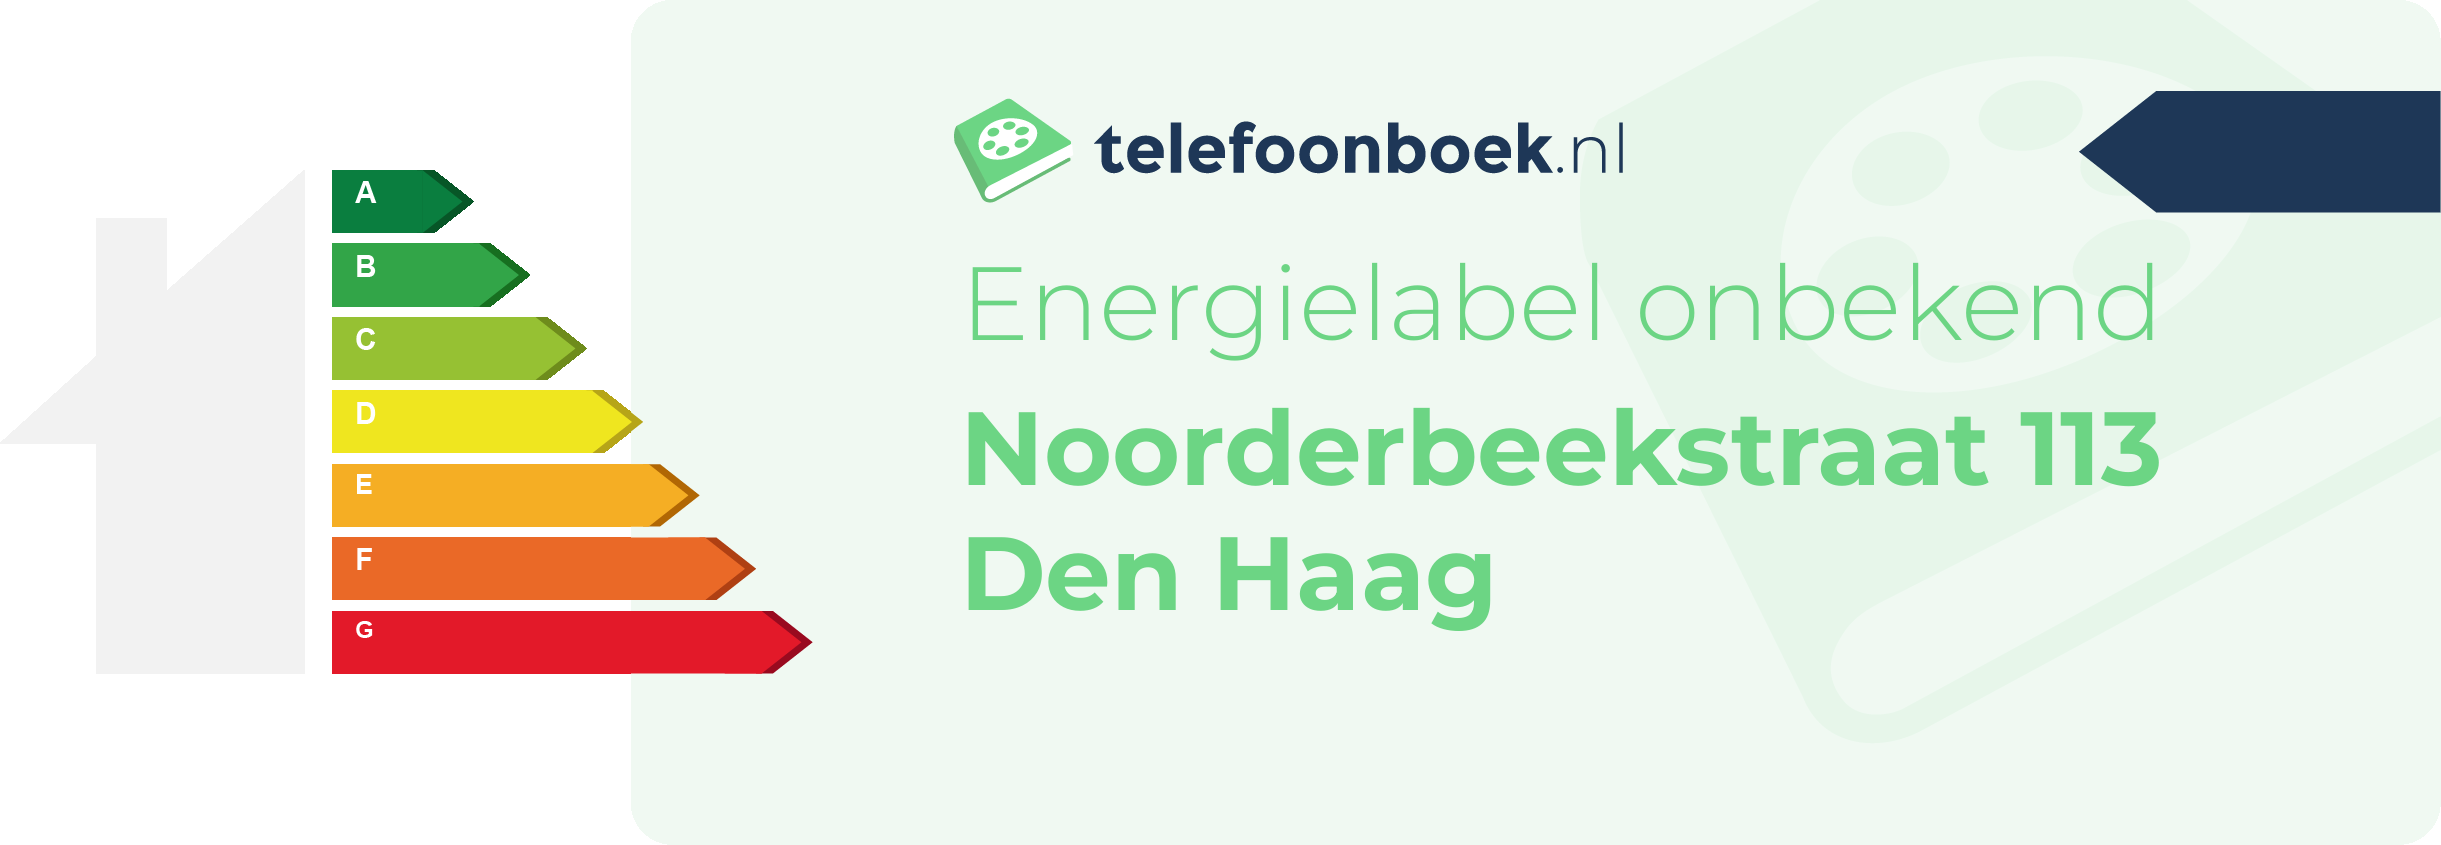 Energielabel Noorderbeekstraat 113 Den Haag